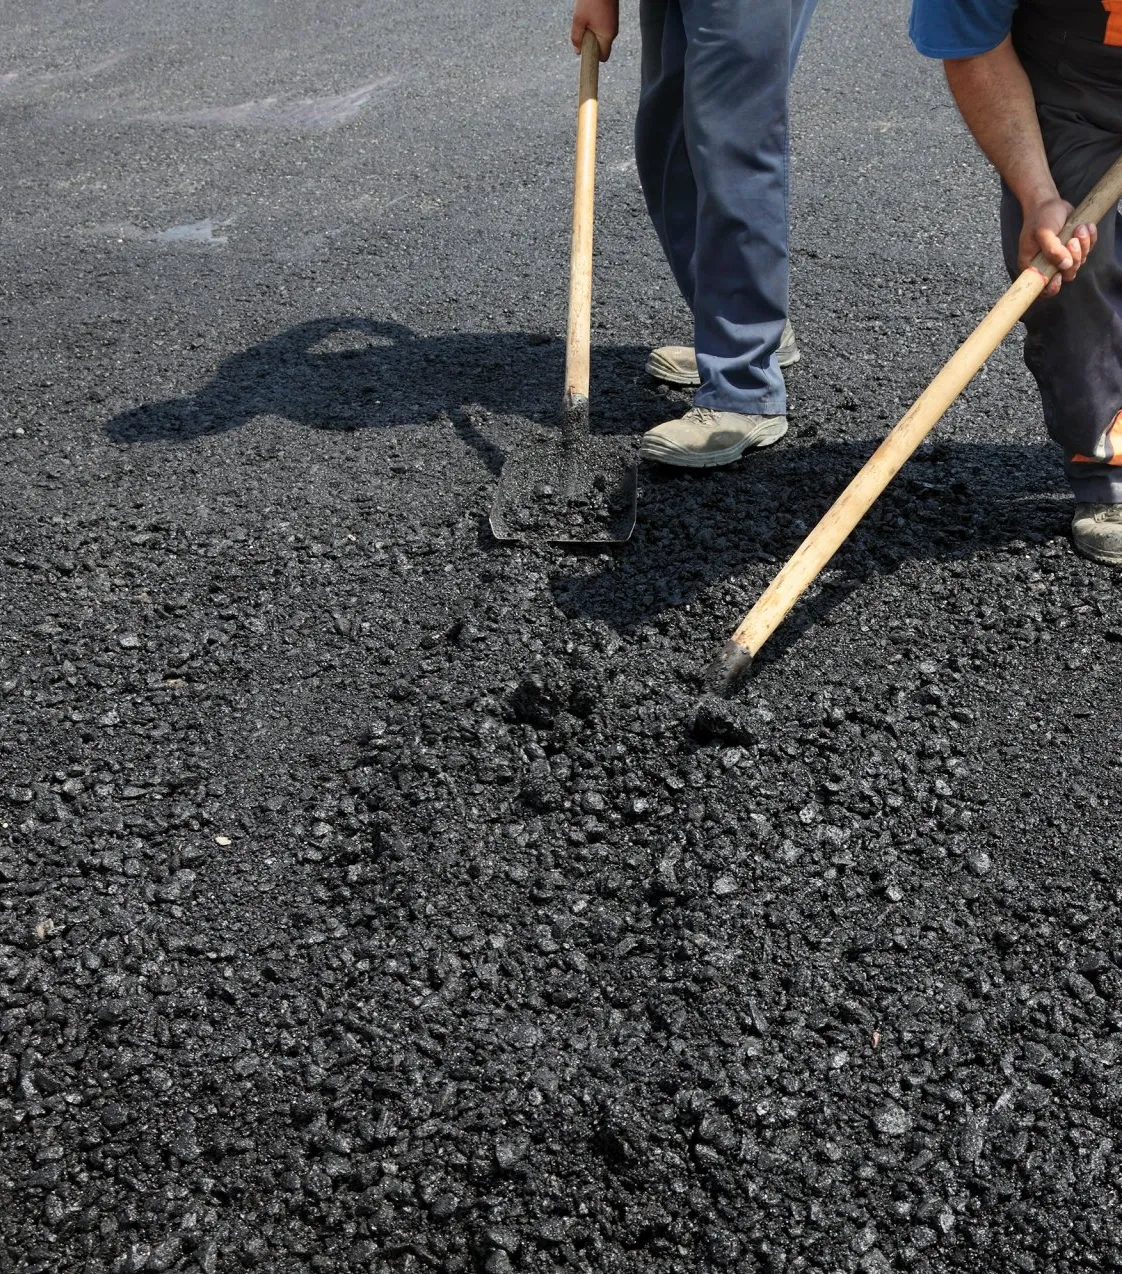 Parking Lot contractors spreading asphalt in Miami